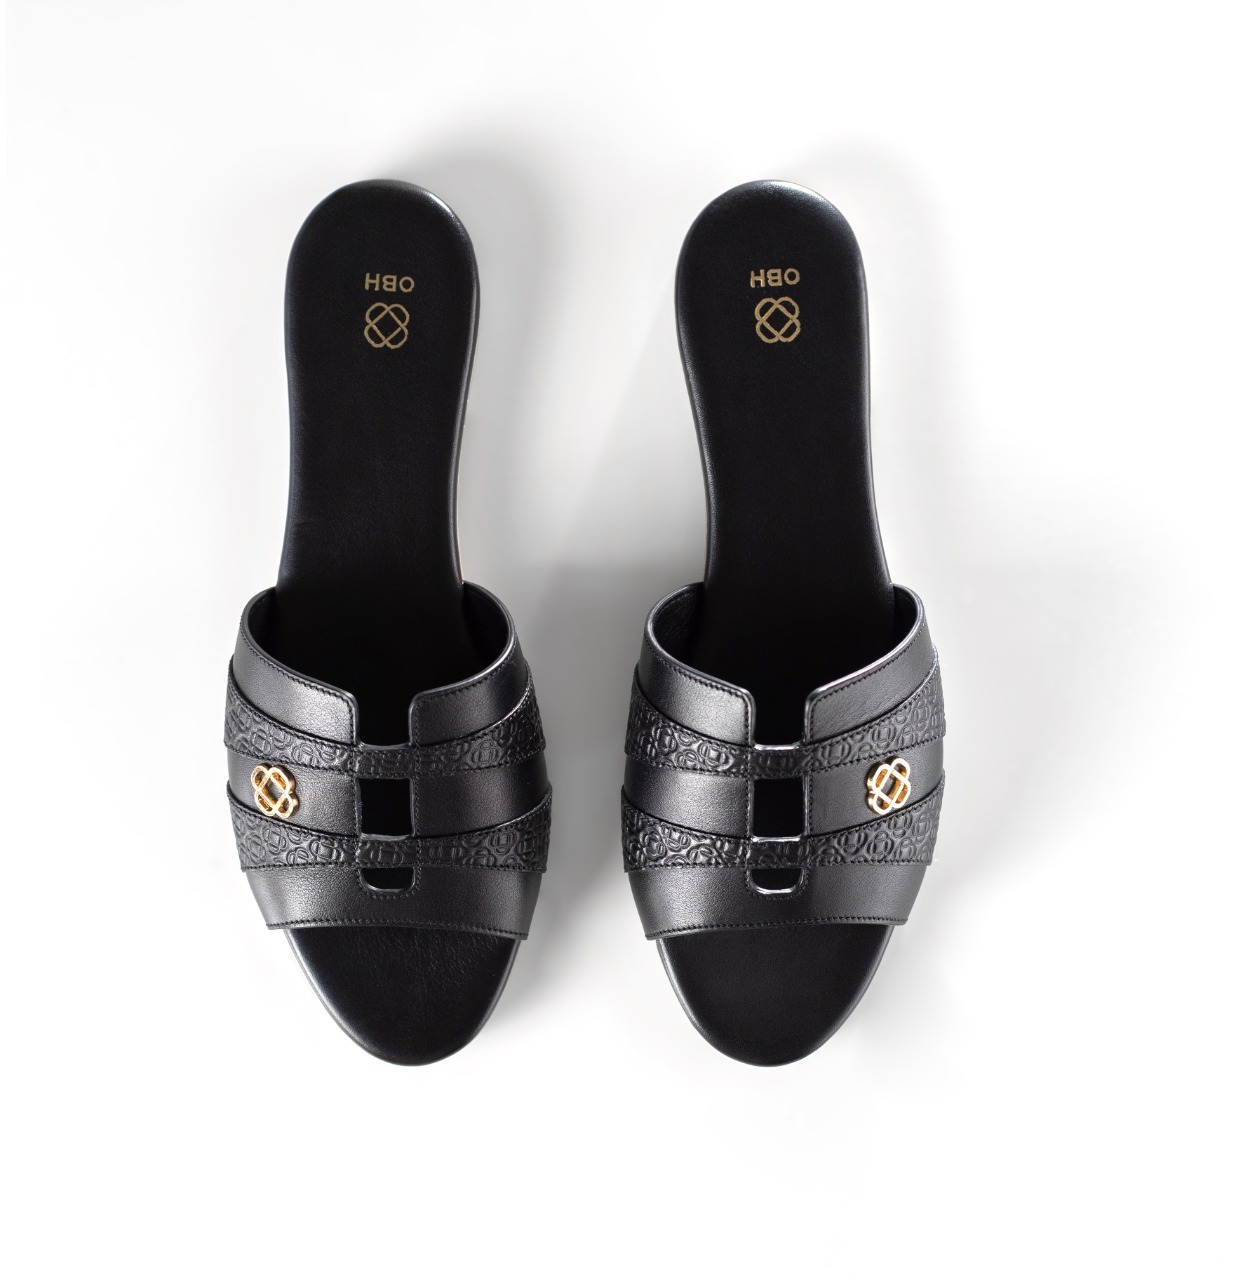 Buy OBH Ladies Sandal 8 Model Black Nappa Color Online in UAE | OBH ...